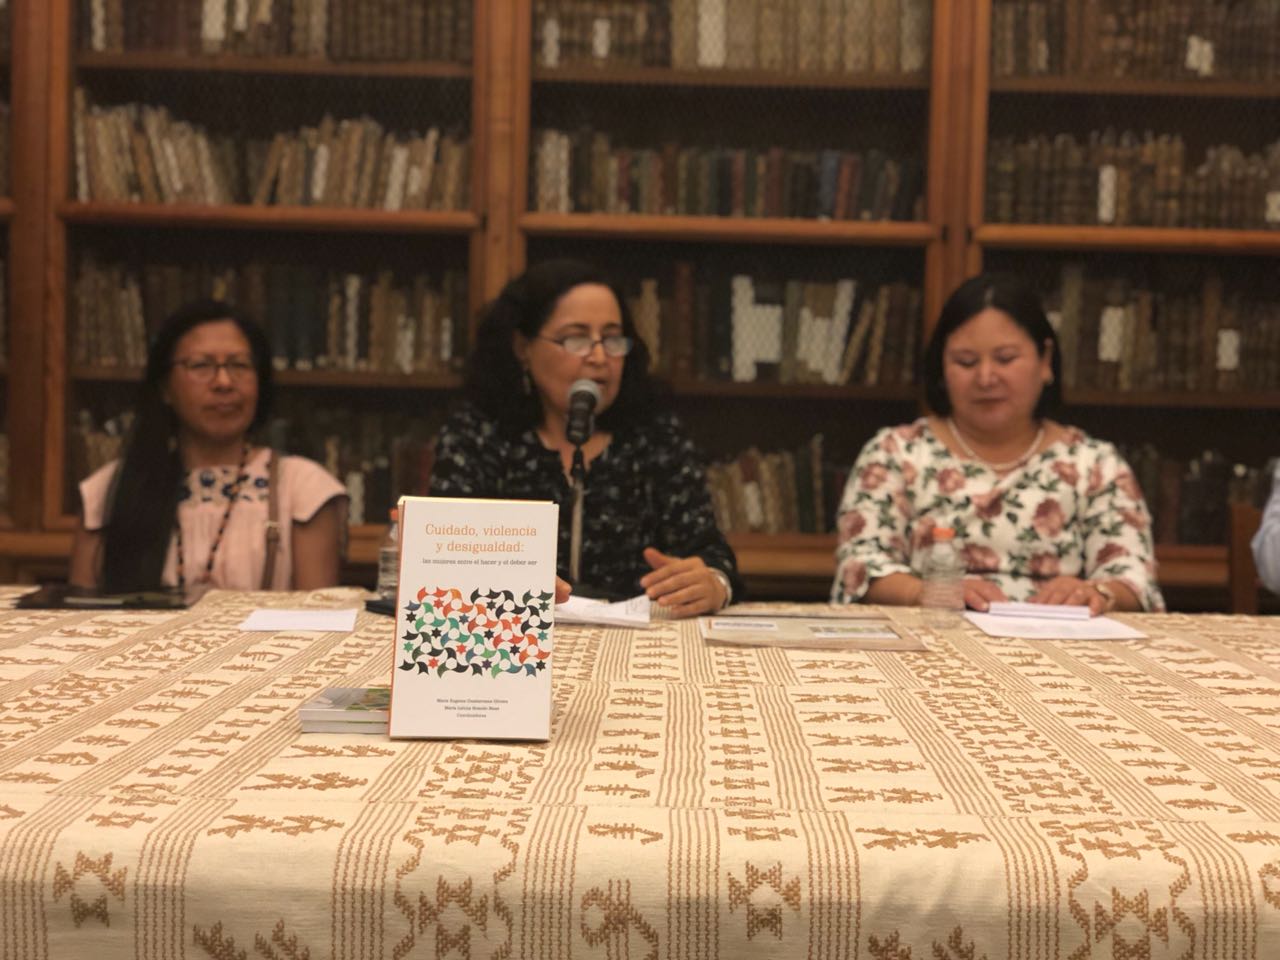 Presenta UABJO los libros Cuidado, violencia y desigualdad: las mujeres entre el hacer y deber ser y Espacios educativos e investigación científica en la sociedad actual